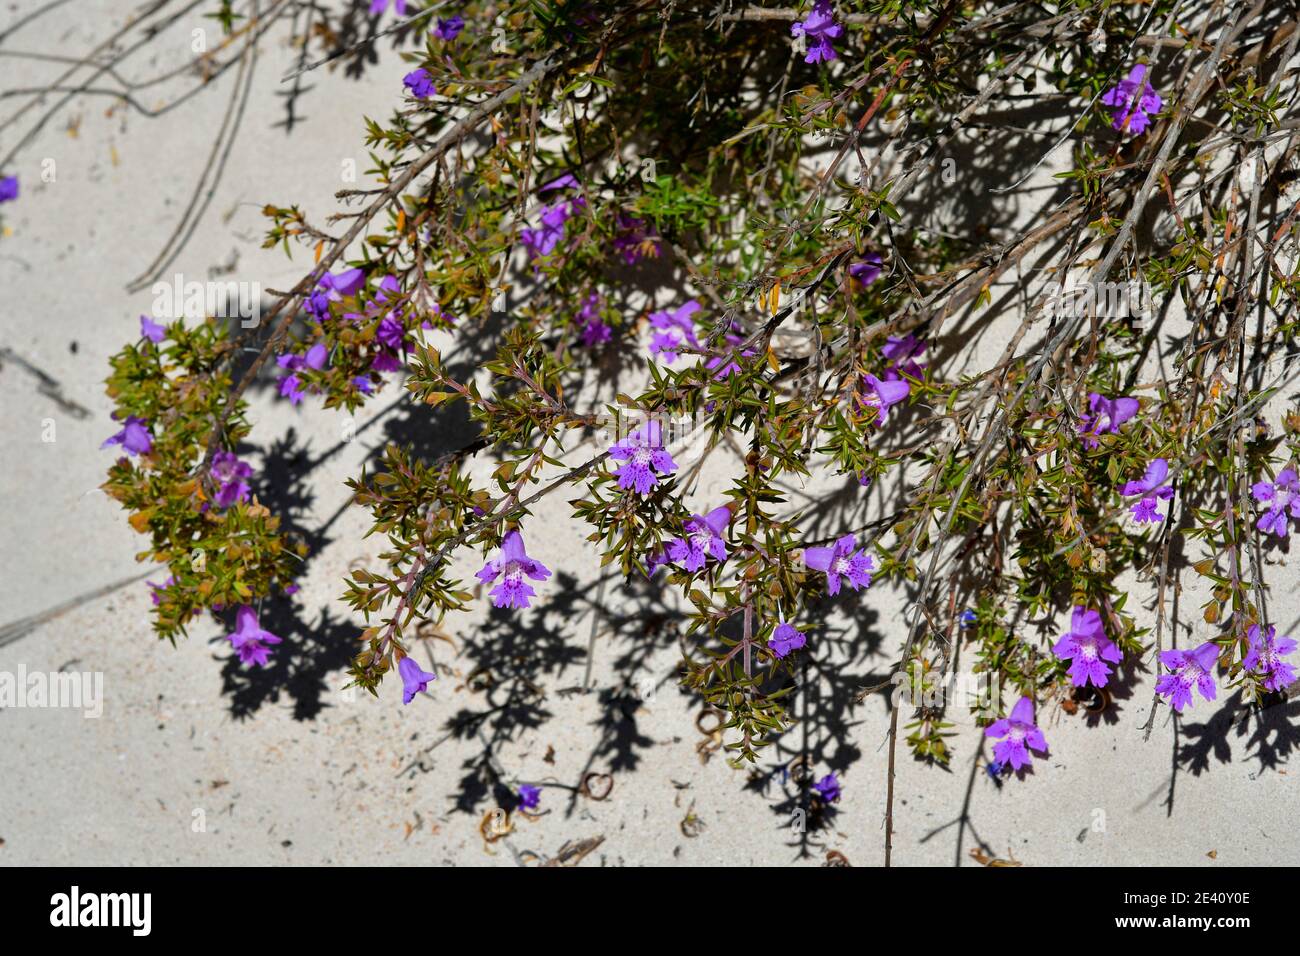 Schlangenbusch endemisch in Australia Australiana, cespuglio di serpente fiorito Foto Stock